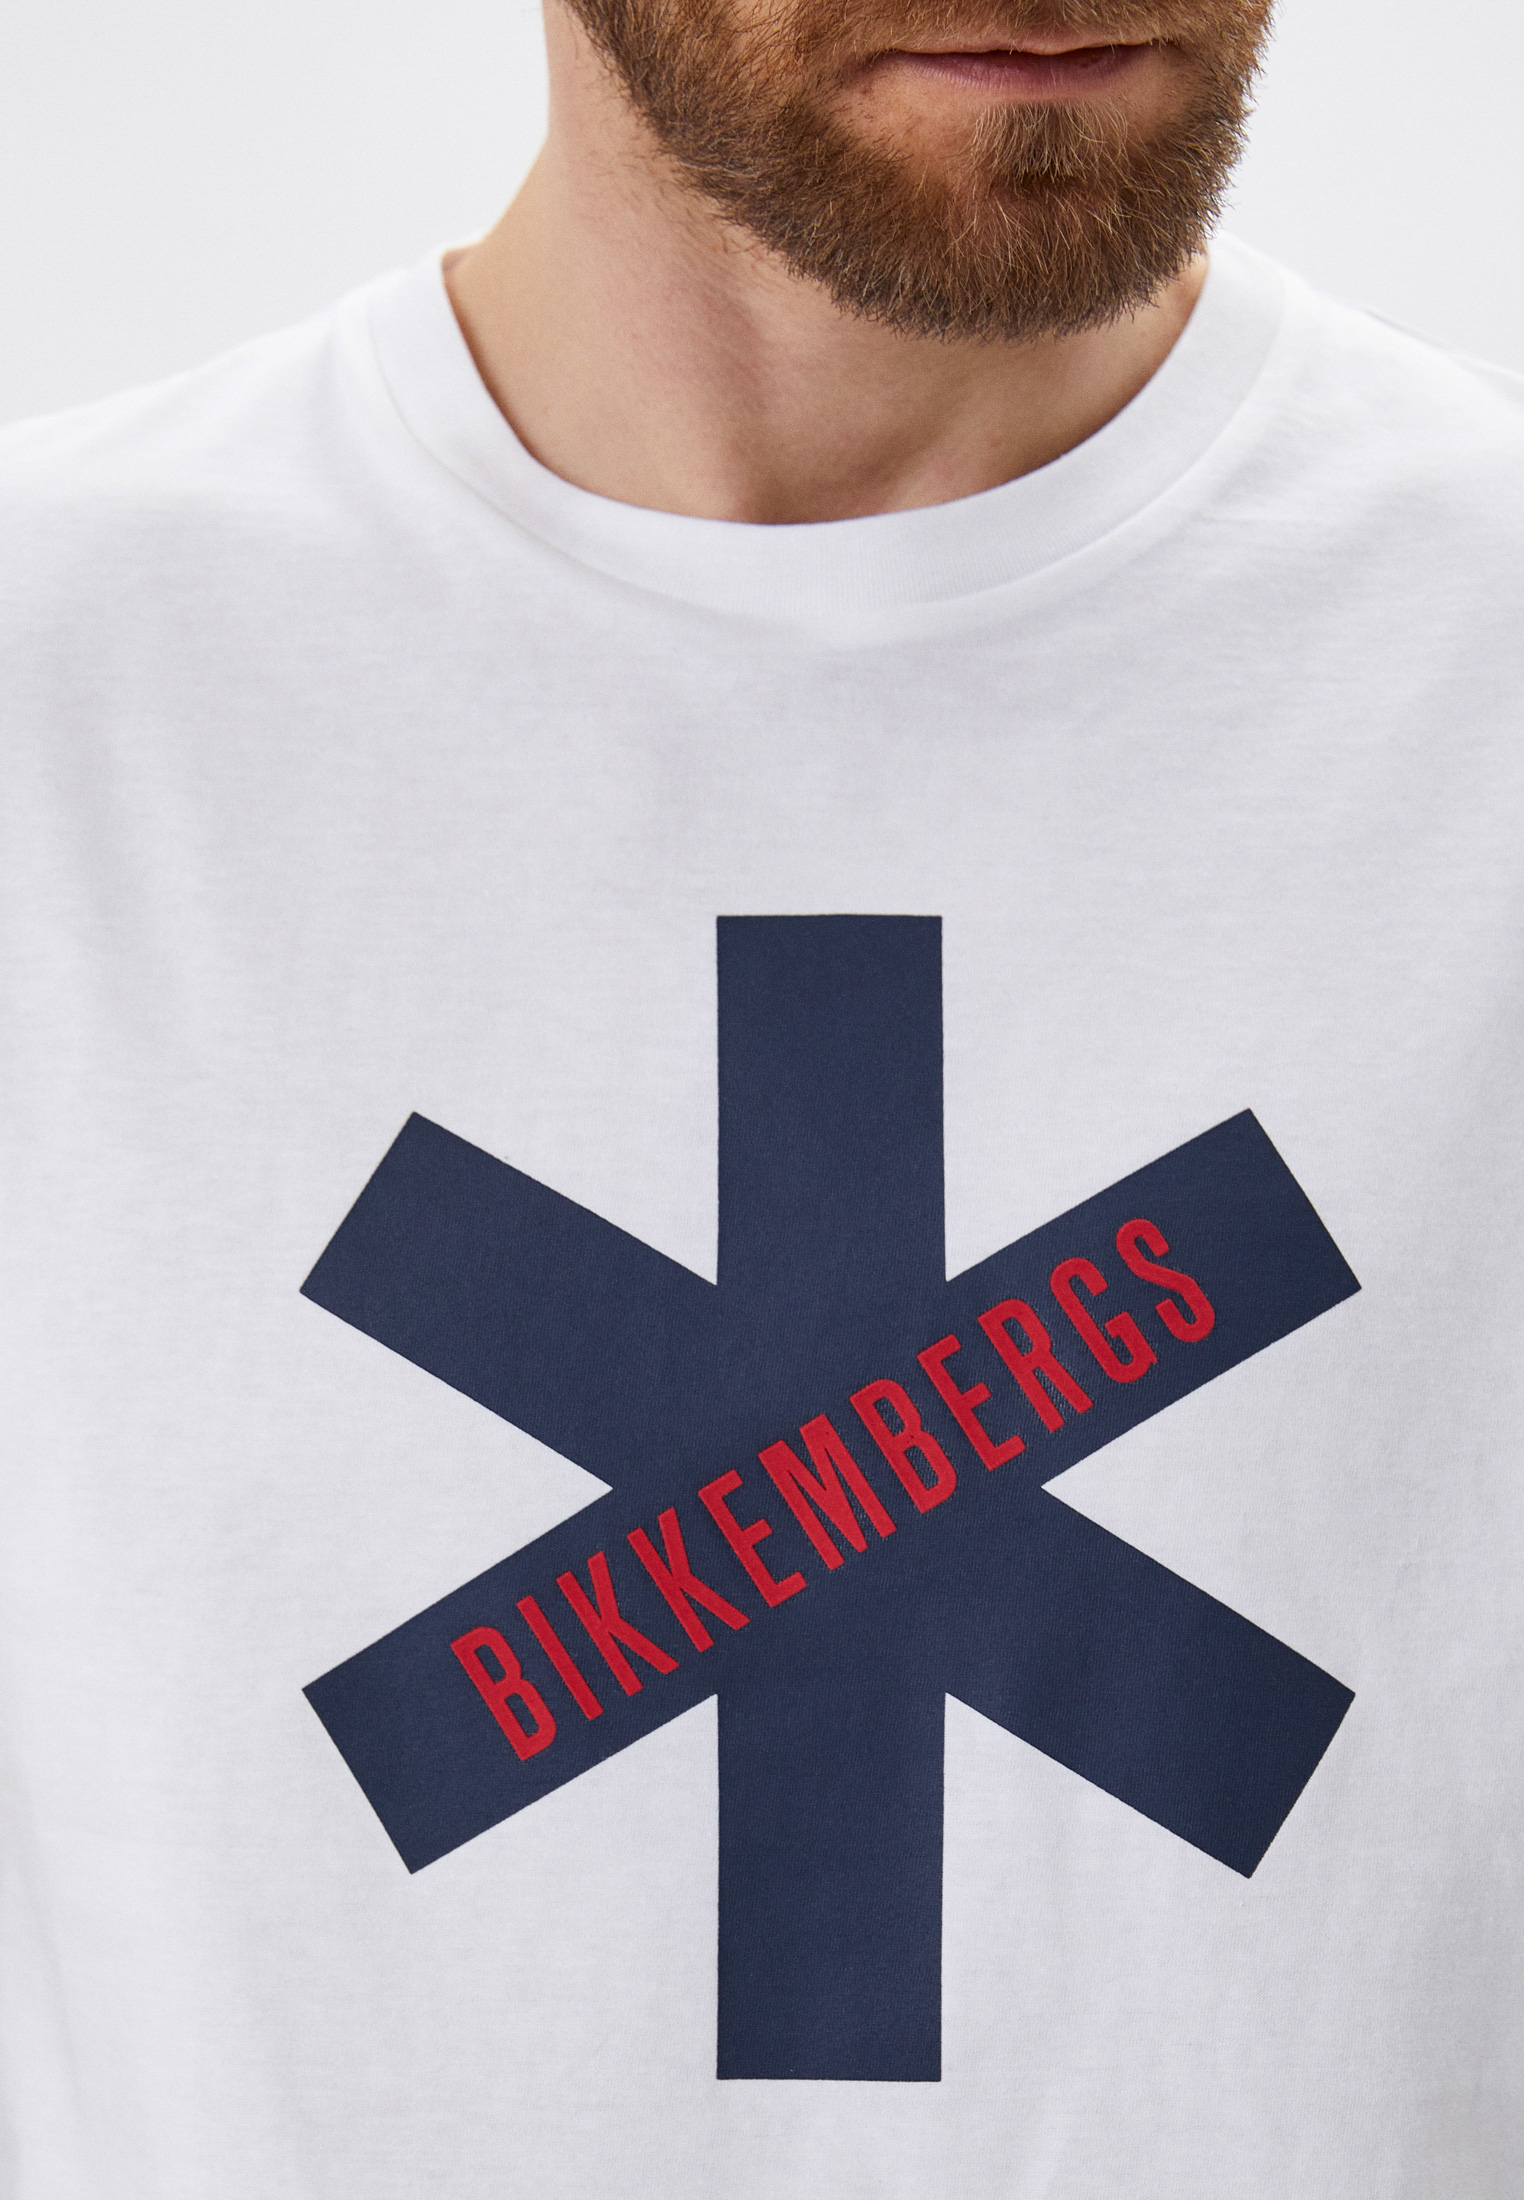 Мужская футболка Bikkembergs (Биккембергс) C 4 101 1B M 4349: изображение 4